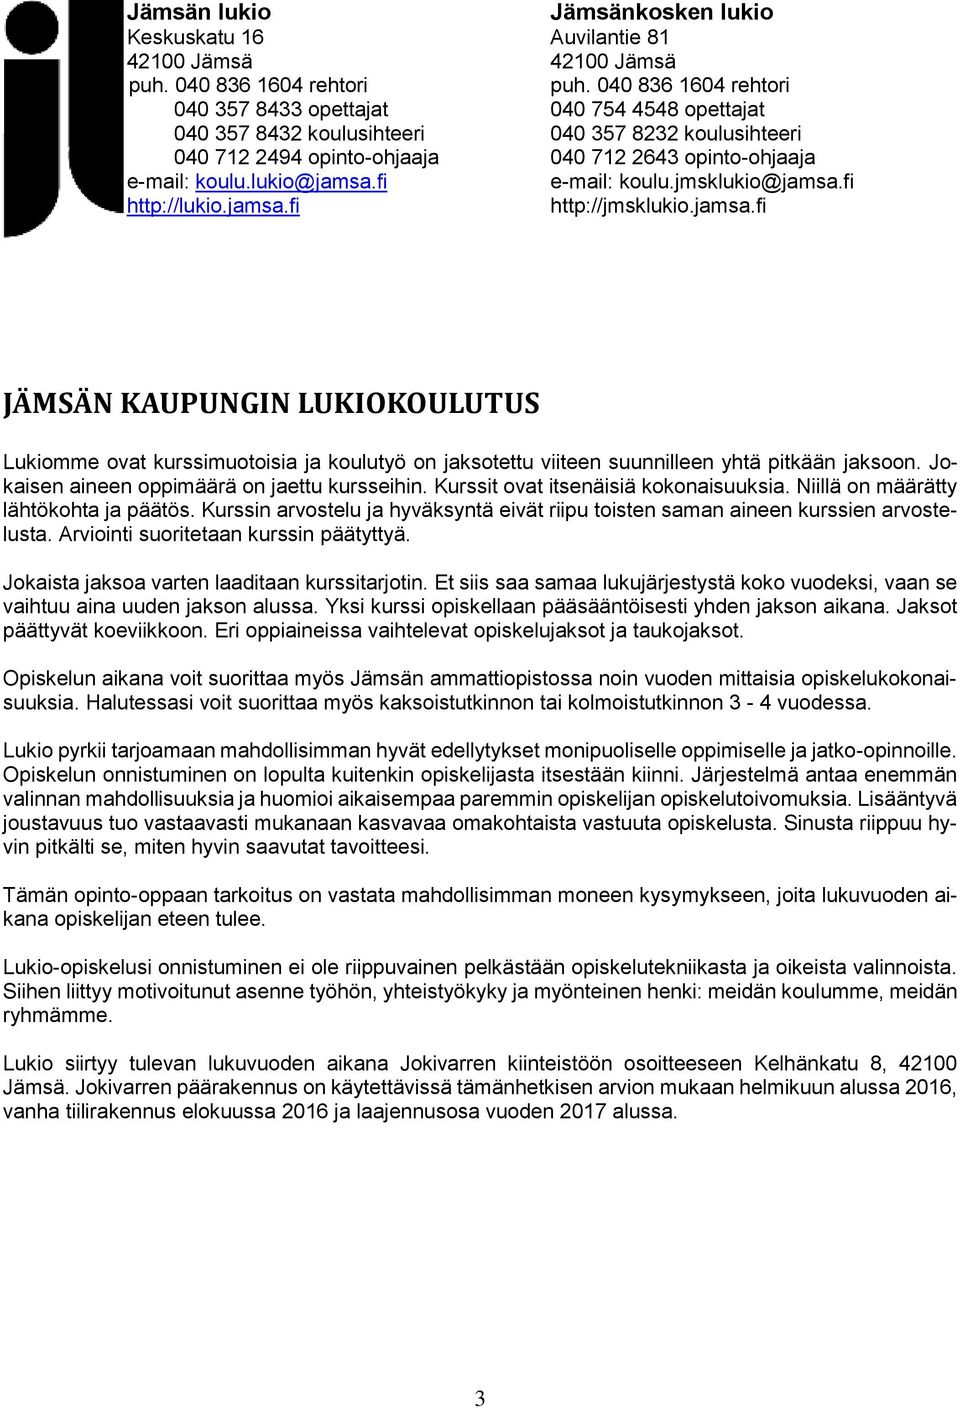 lukio@jamsa.fi e-mail: koulu.jmsklukio@jamsa.fi http://lukio.jamsa.fi http://jmsklukio.jamsa.fi JÄMSÄN KAUPUNGIN LUKIOKOULUTUS Lukiomme ovat kurssimuotoisia ja koulutyö on jaksotettu viiteen suunnilleen yhtä pitkään jaksoon.